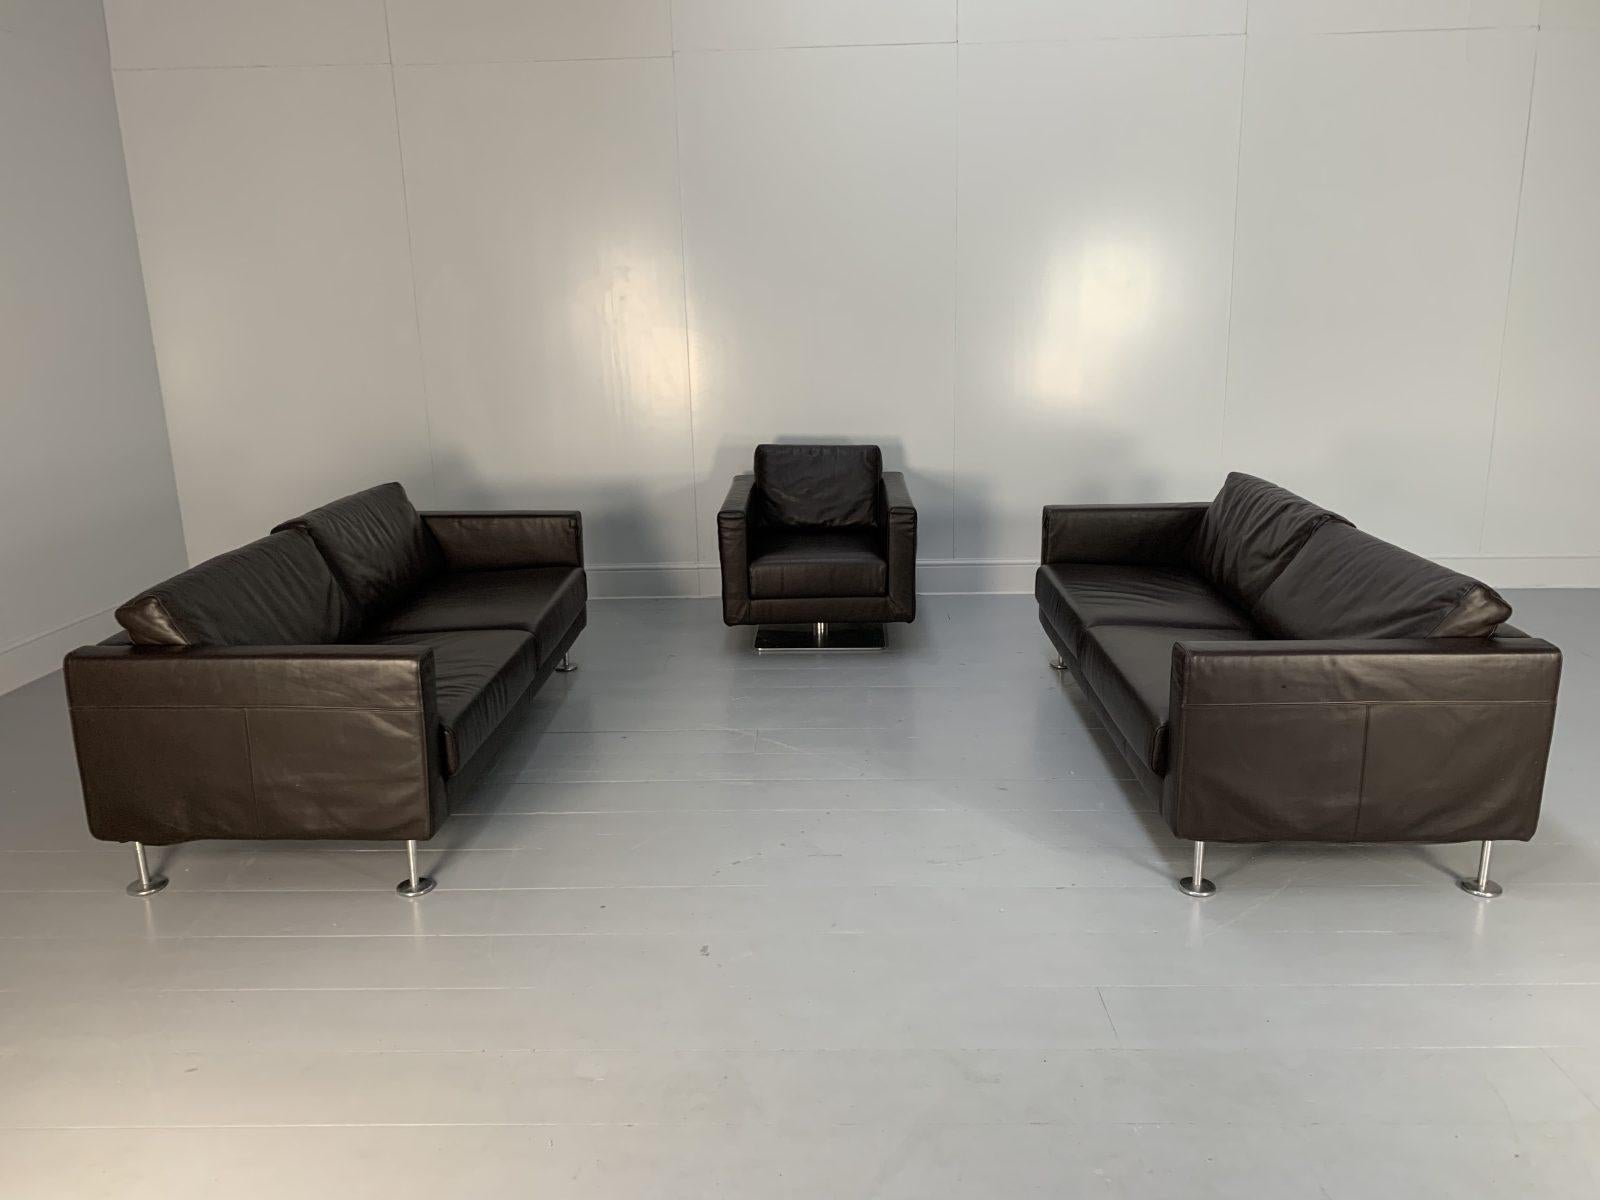 Bonjour les amis, et bienvenue à une nouvelle offre incontournable de Lord Browns Furniture, la première source de canapés et de chaises de qualité au Royaume-Uni.

L'offre porte sur un superbe ensemble de sièges 